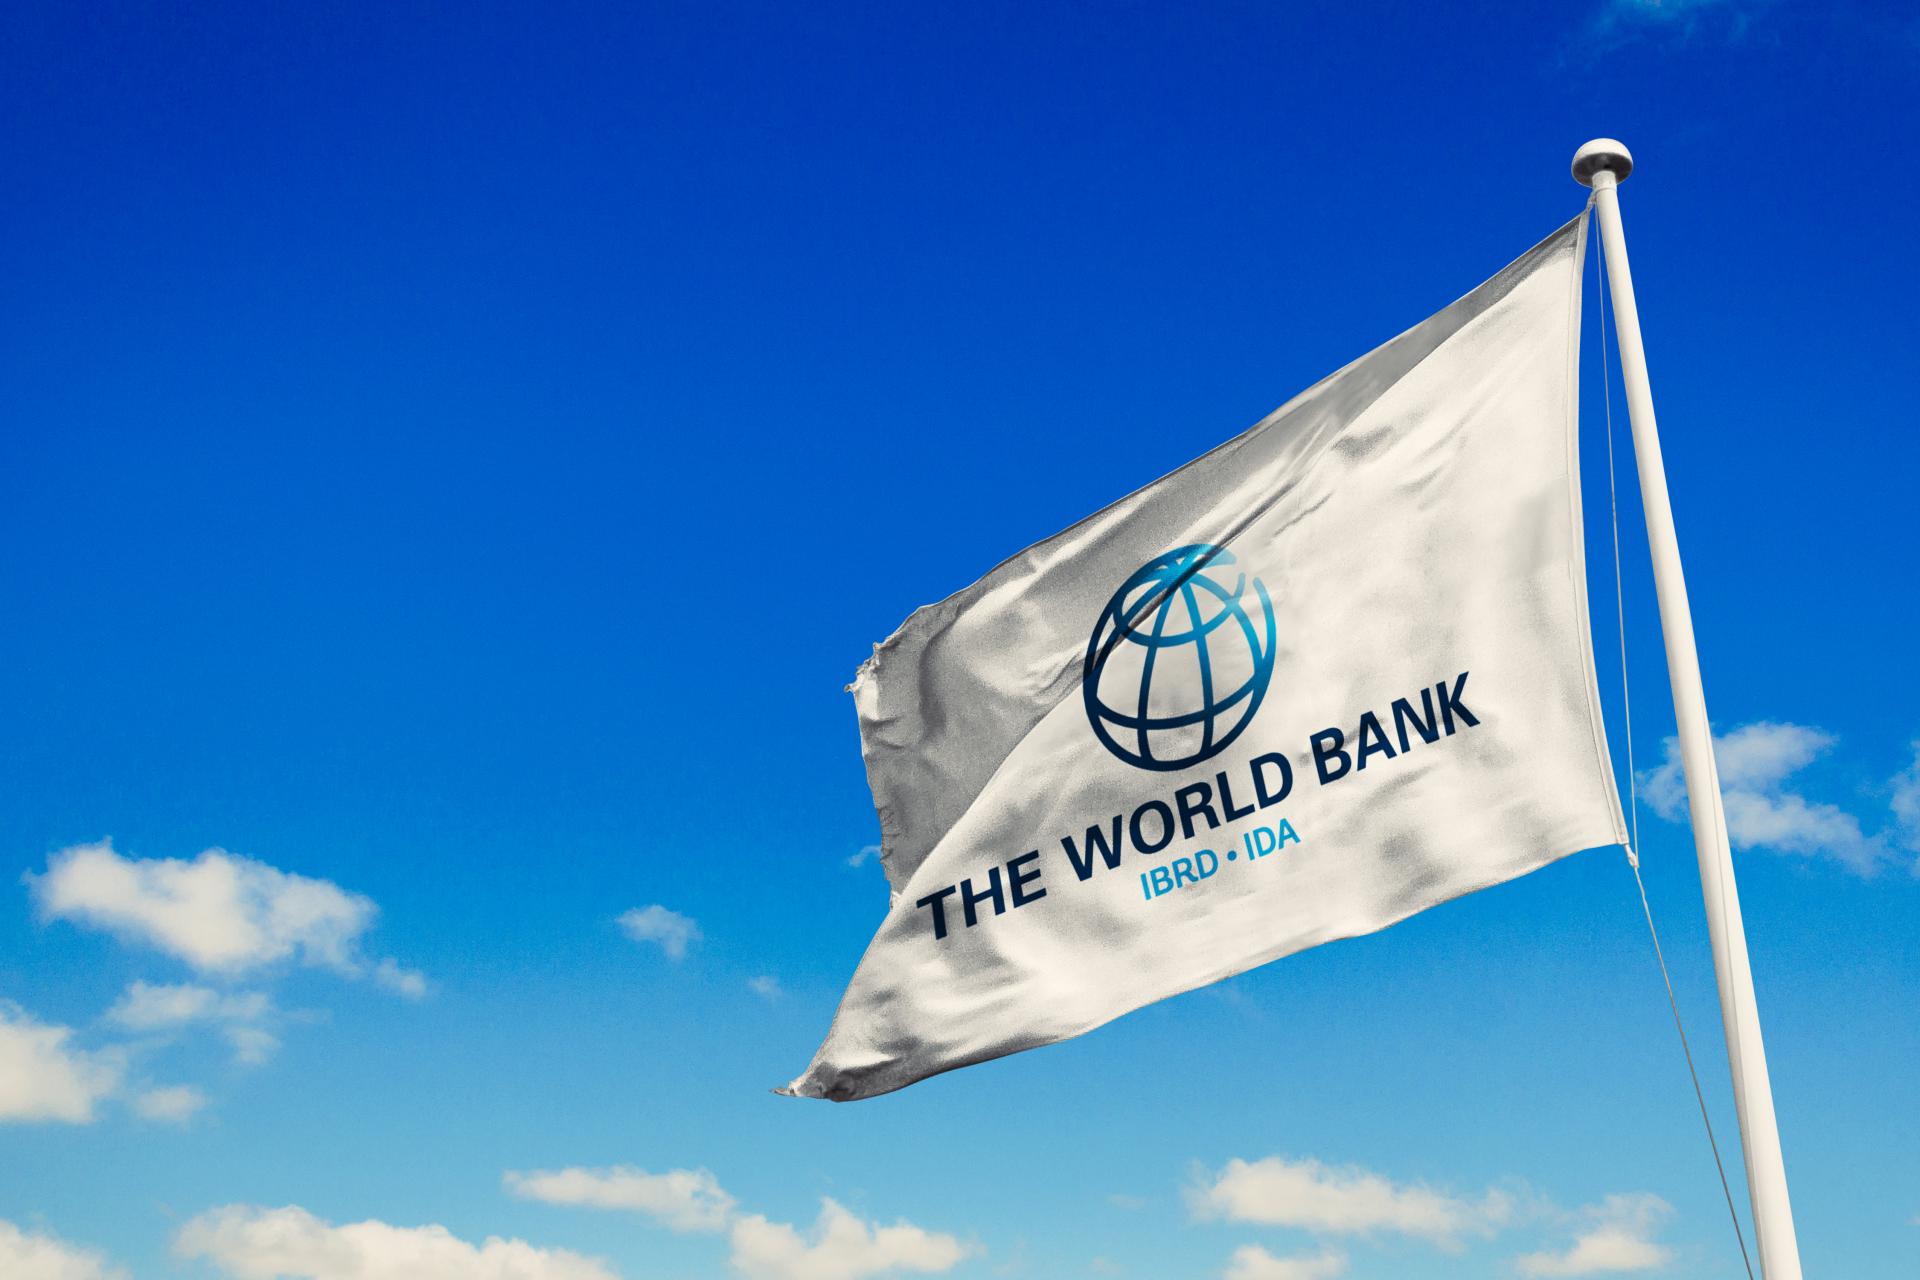 Svjetska banka traži više privatnog kapitala jer potrebe dosežu 2.400 milijardi dolara